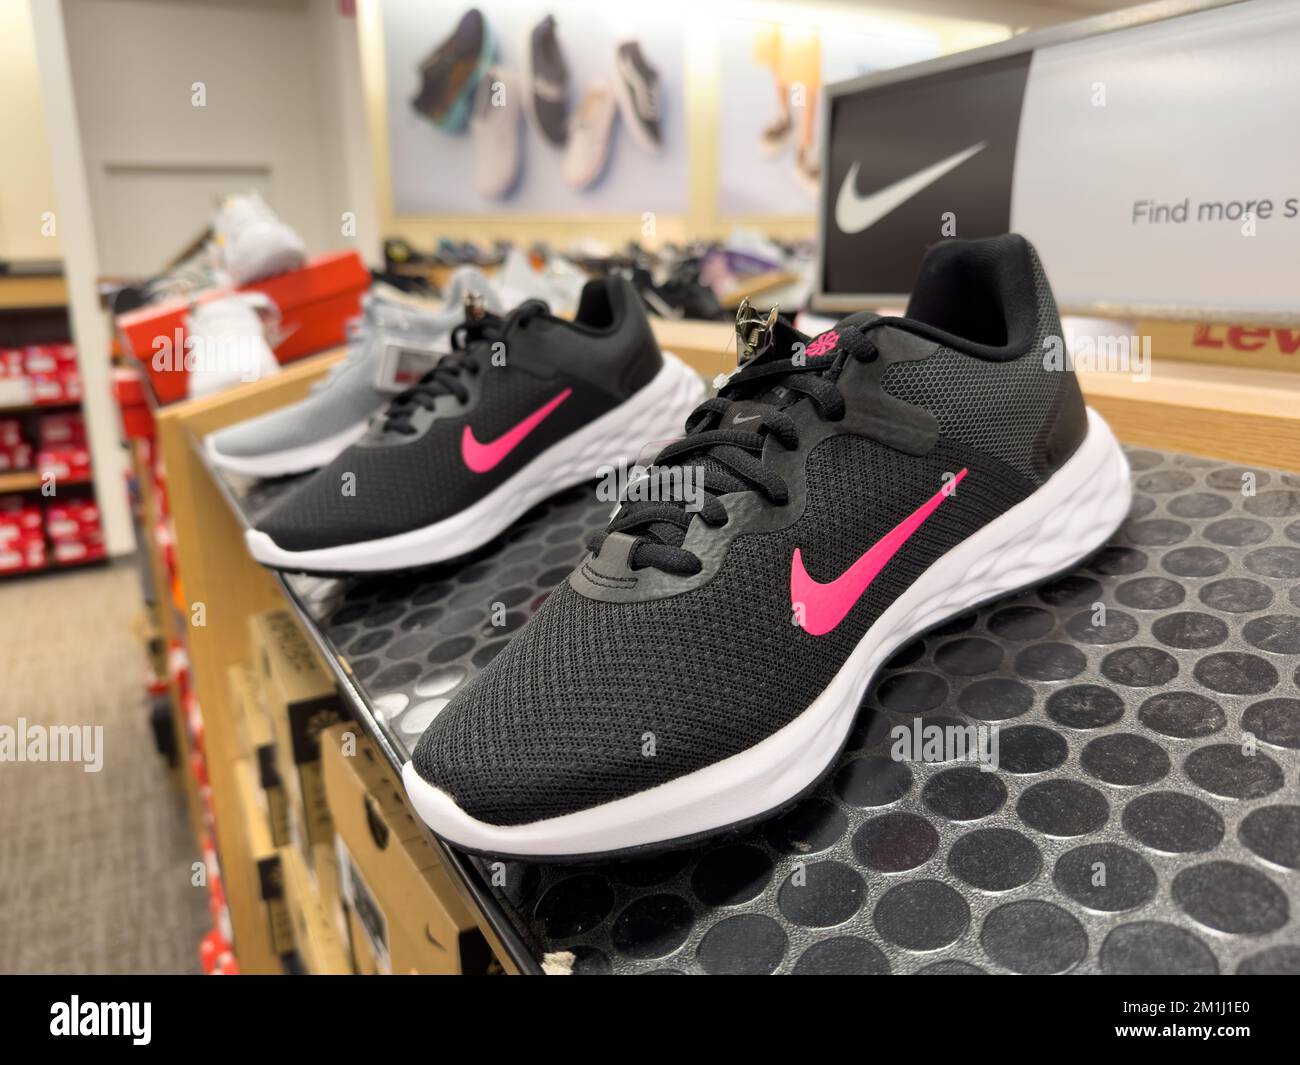 Scarpa Nike sport visualizzata sullo scaffale del negozio Foto Stock